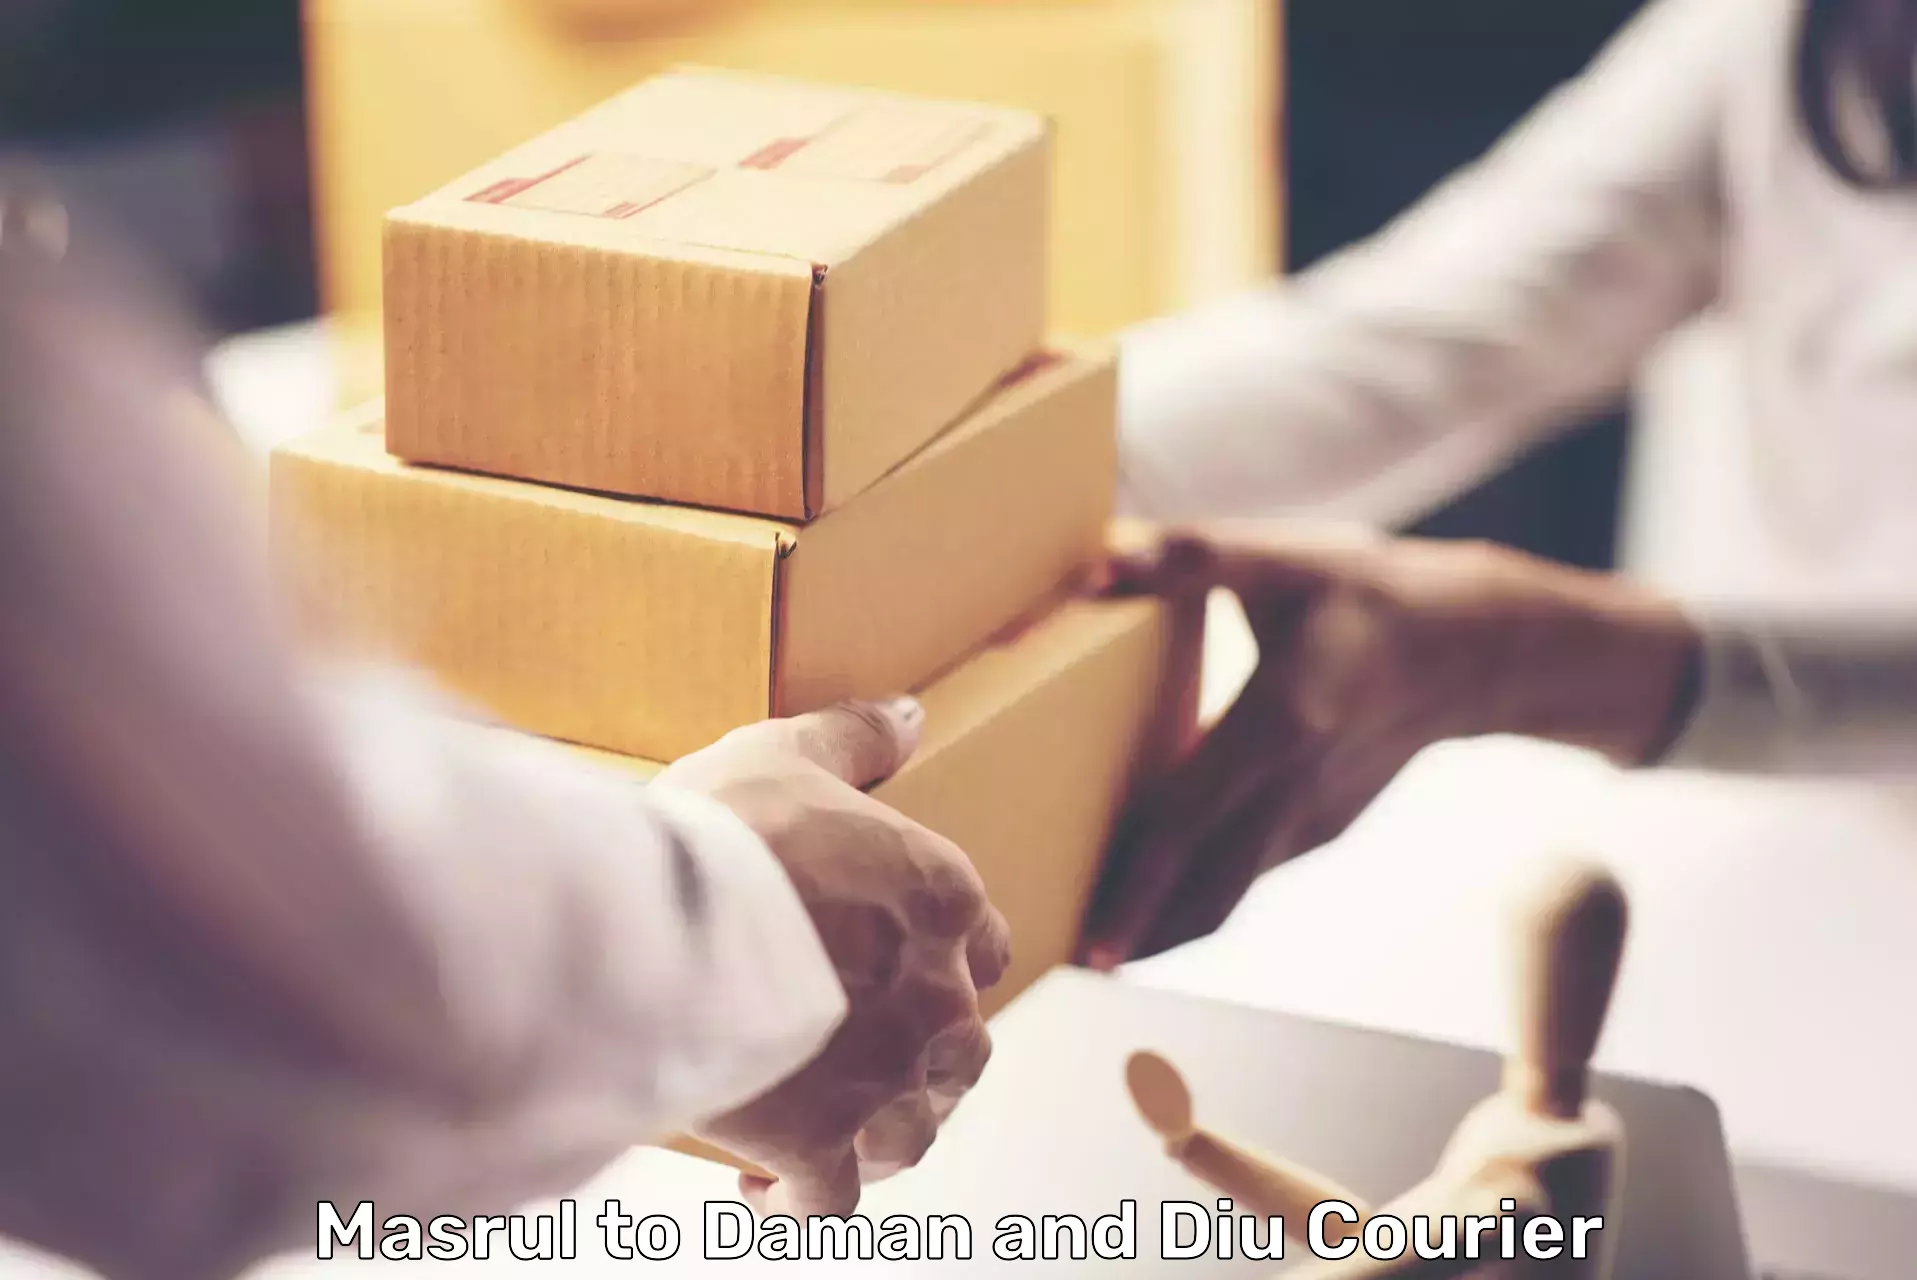 Cargo courier service Masrul to Daman